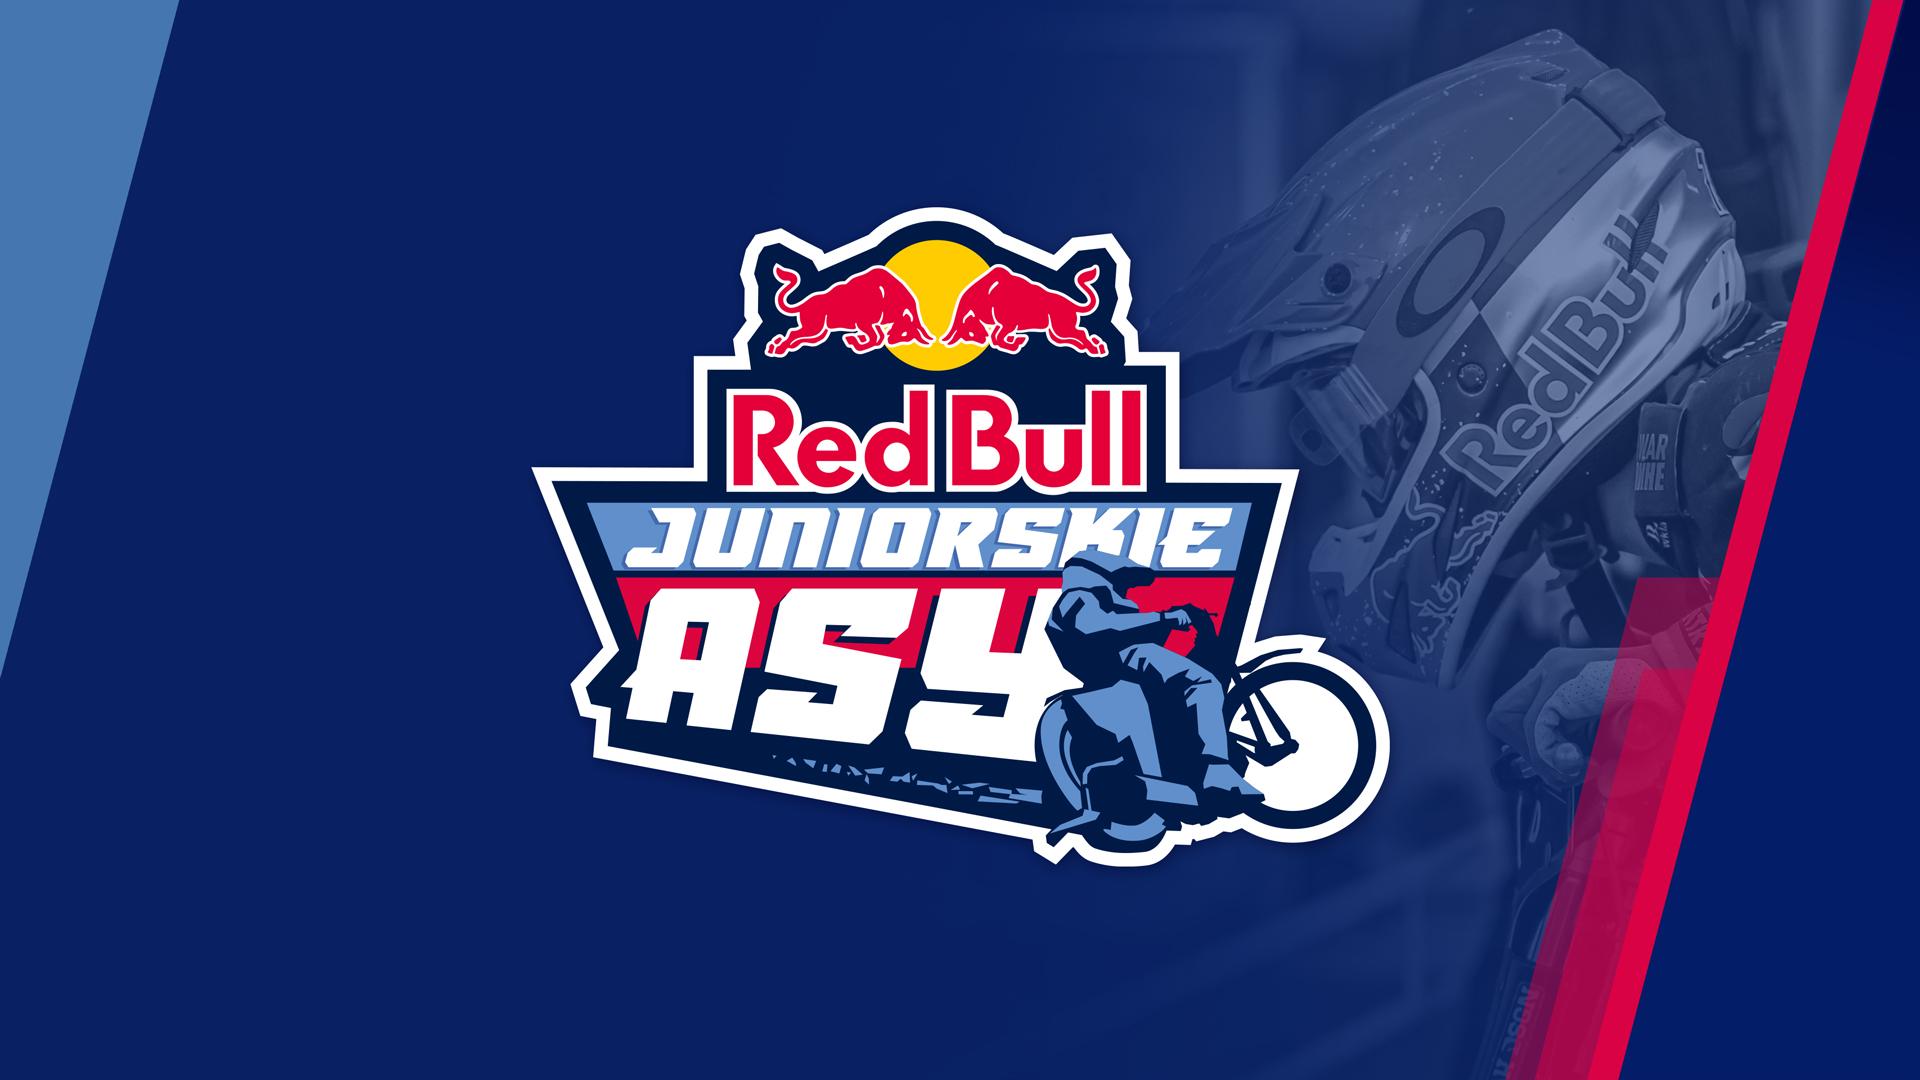 Red Bull Juniorskie Asy: Kowalski samodzielnym liderem w głosowaniach